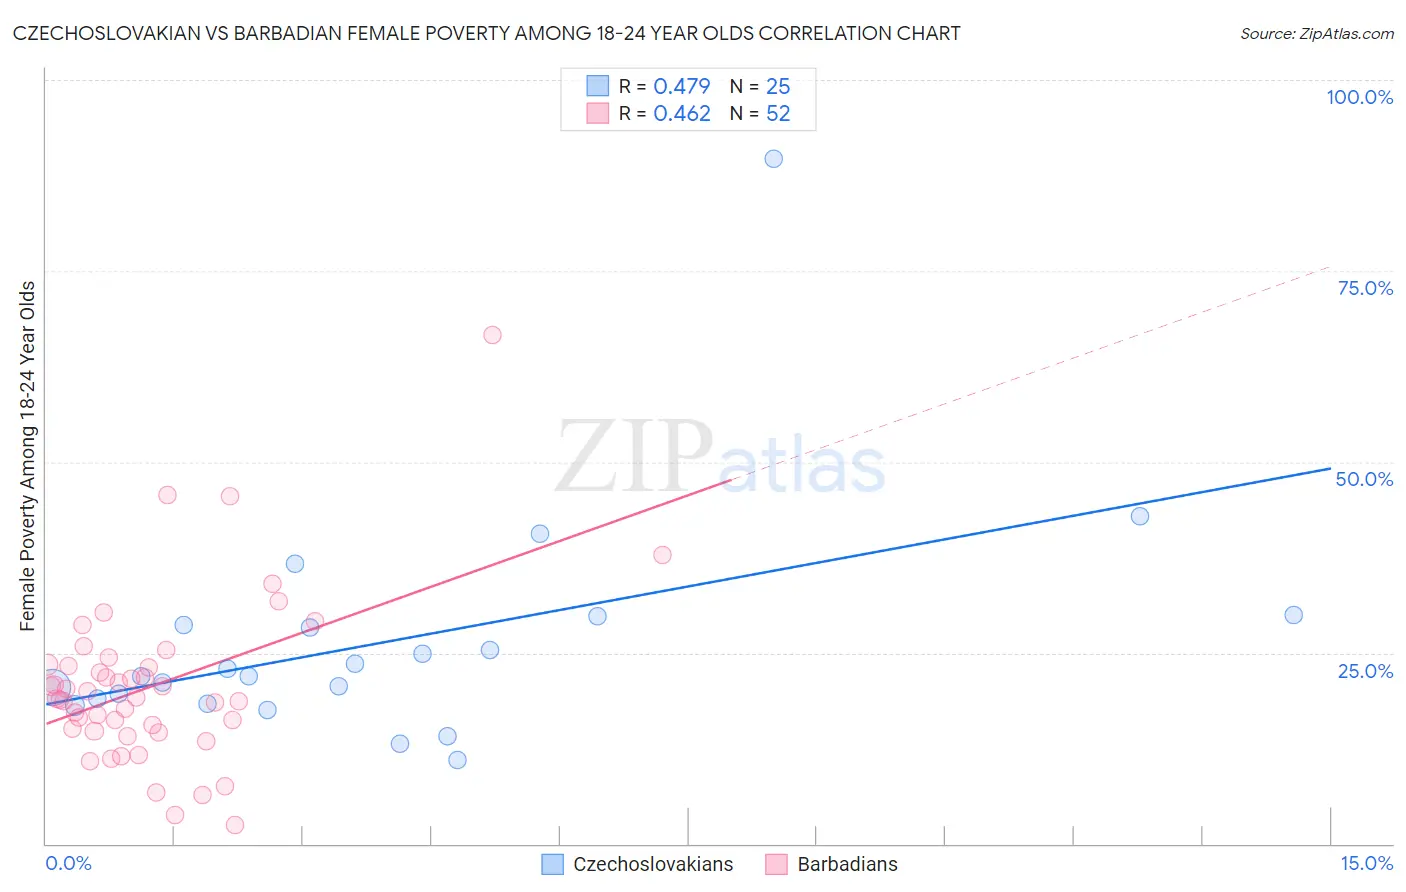 Czechoslovakian vs Barbadian Female Poverty Among 18-24 Year Olds